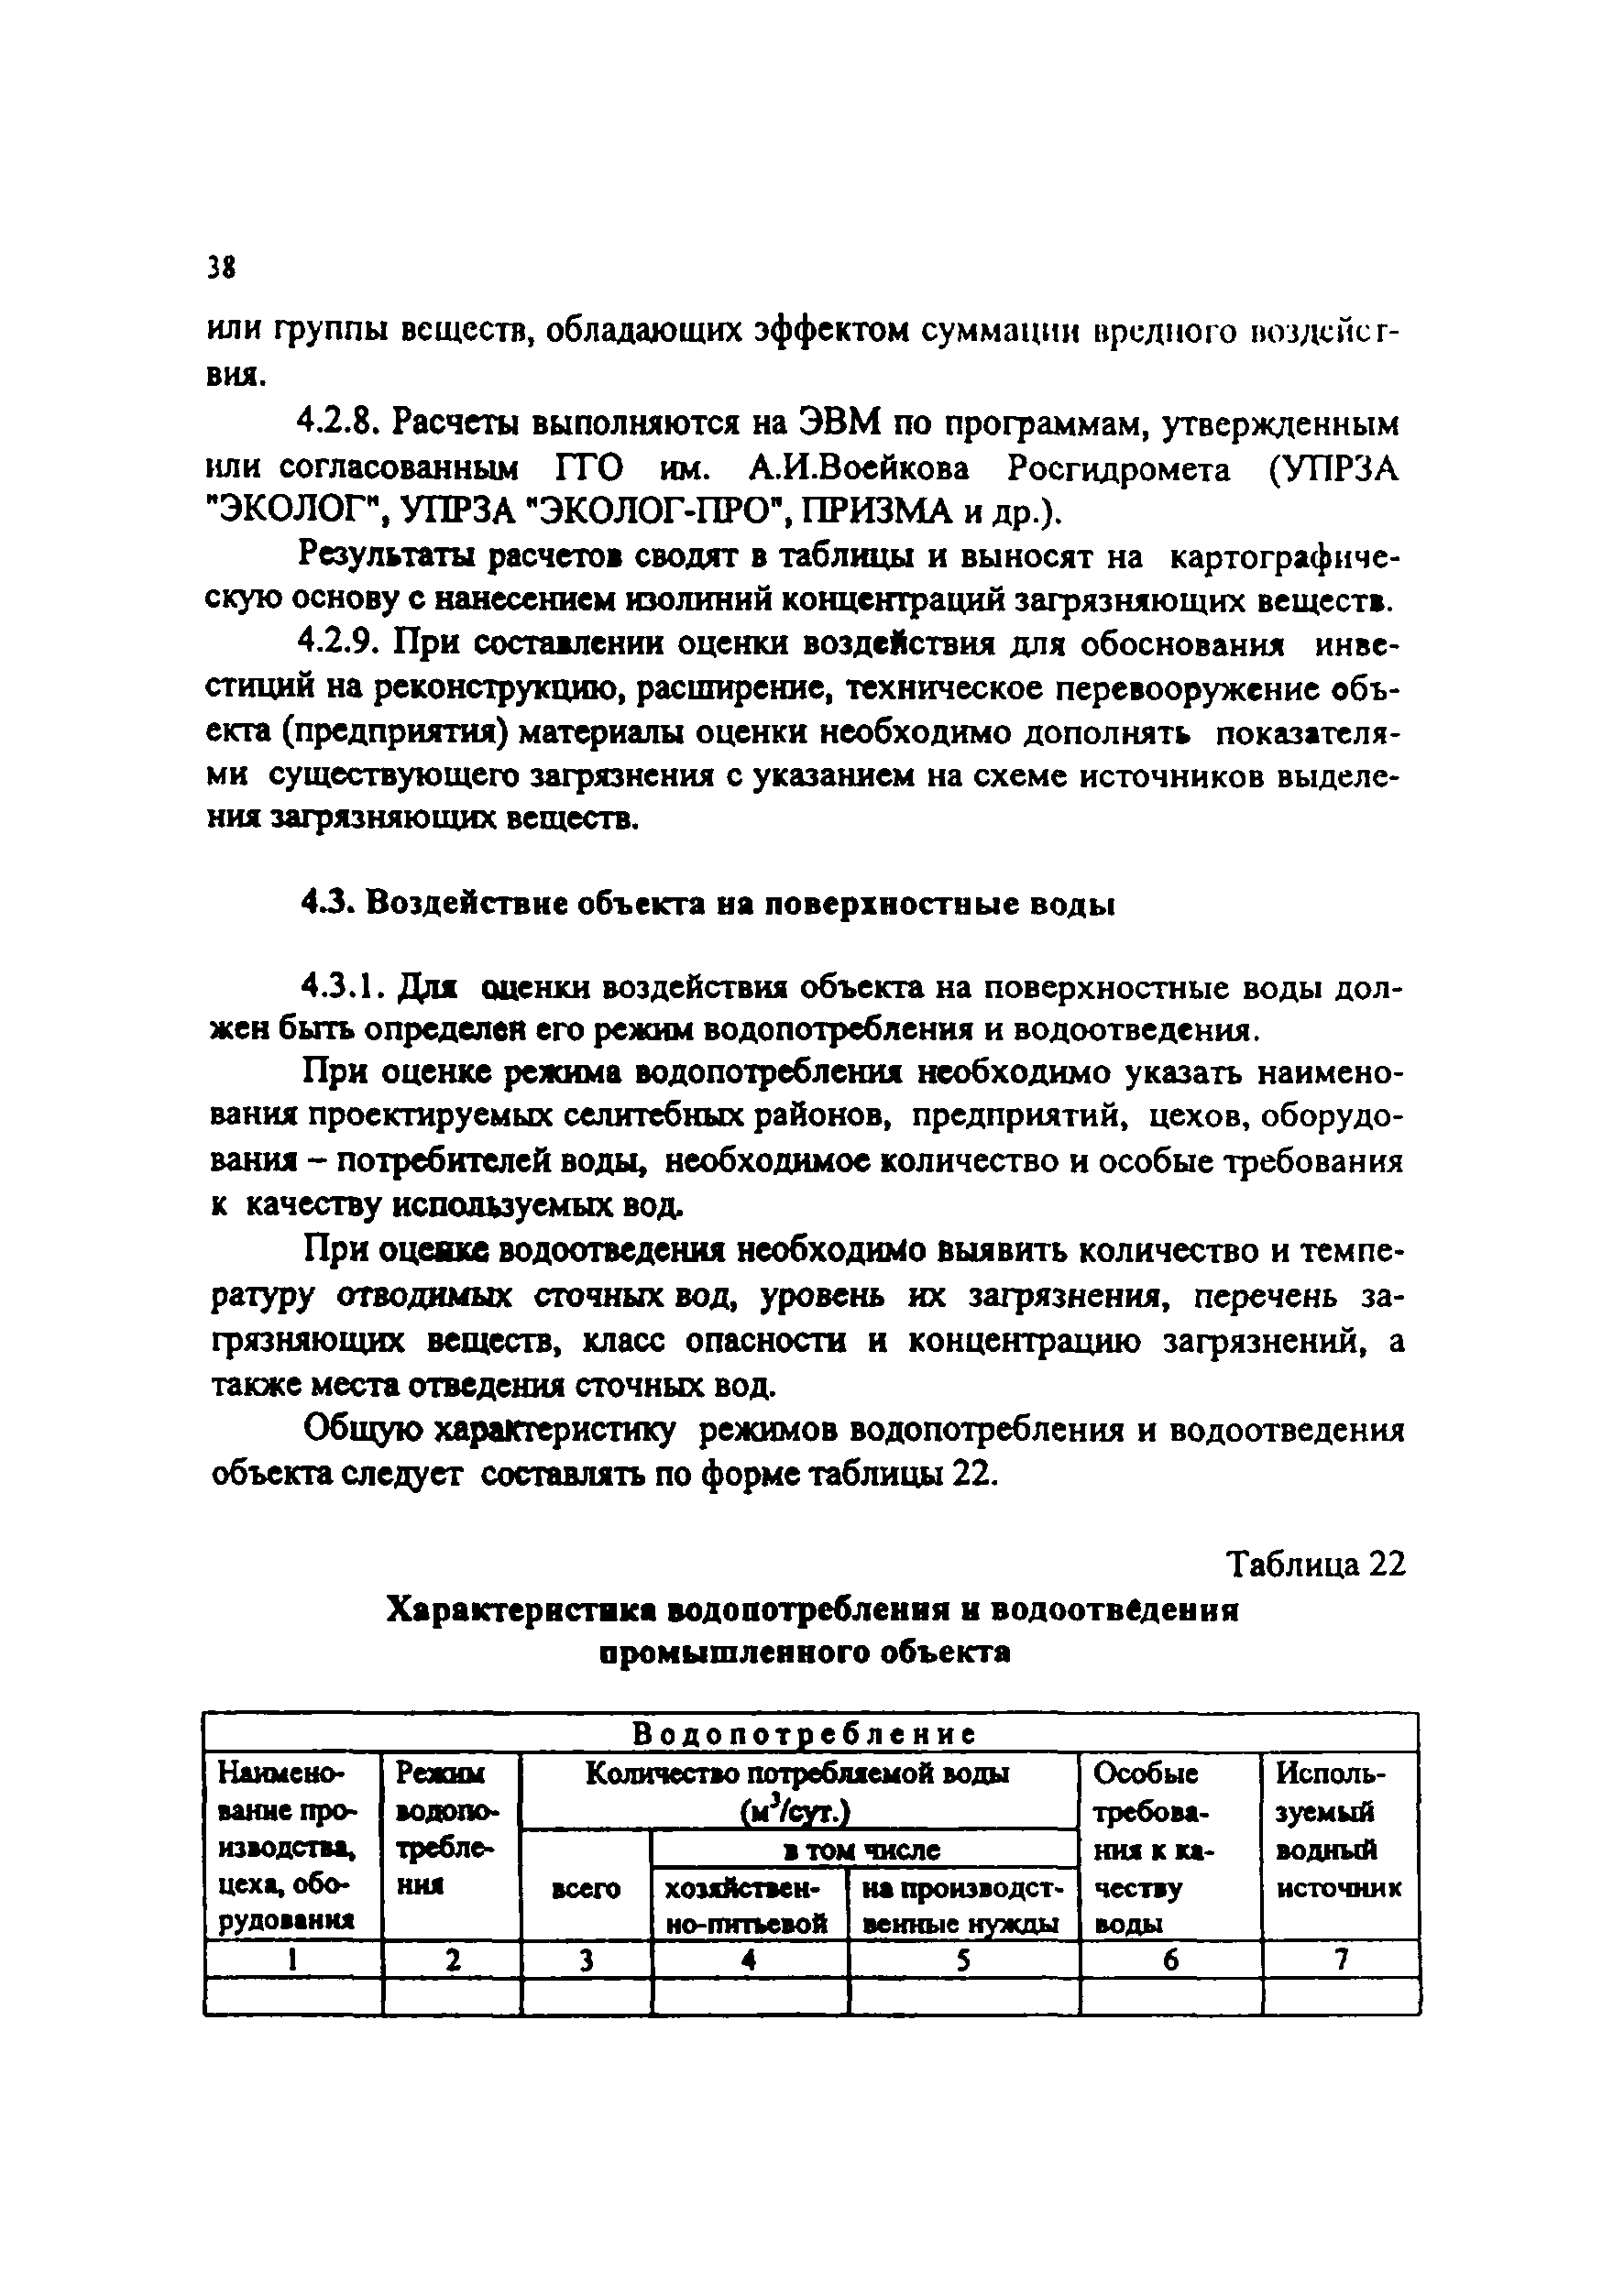 Практическое пособие к СП 11-101-95